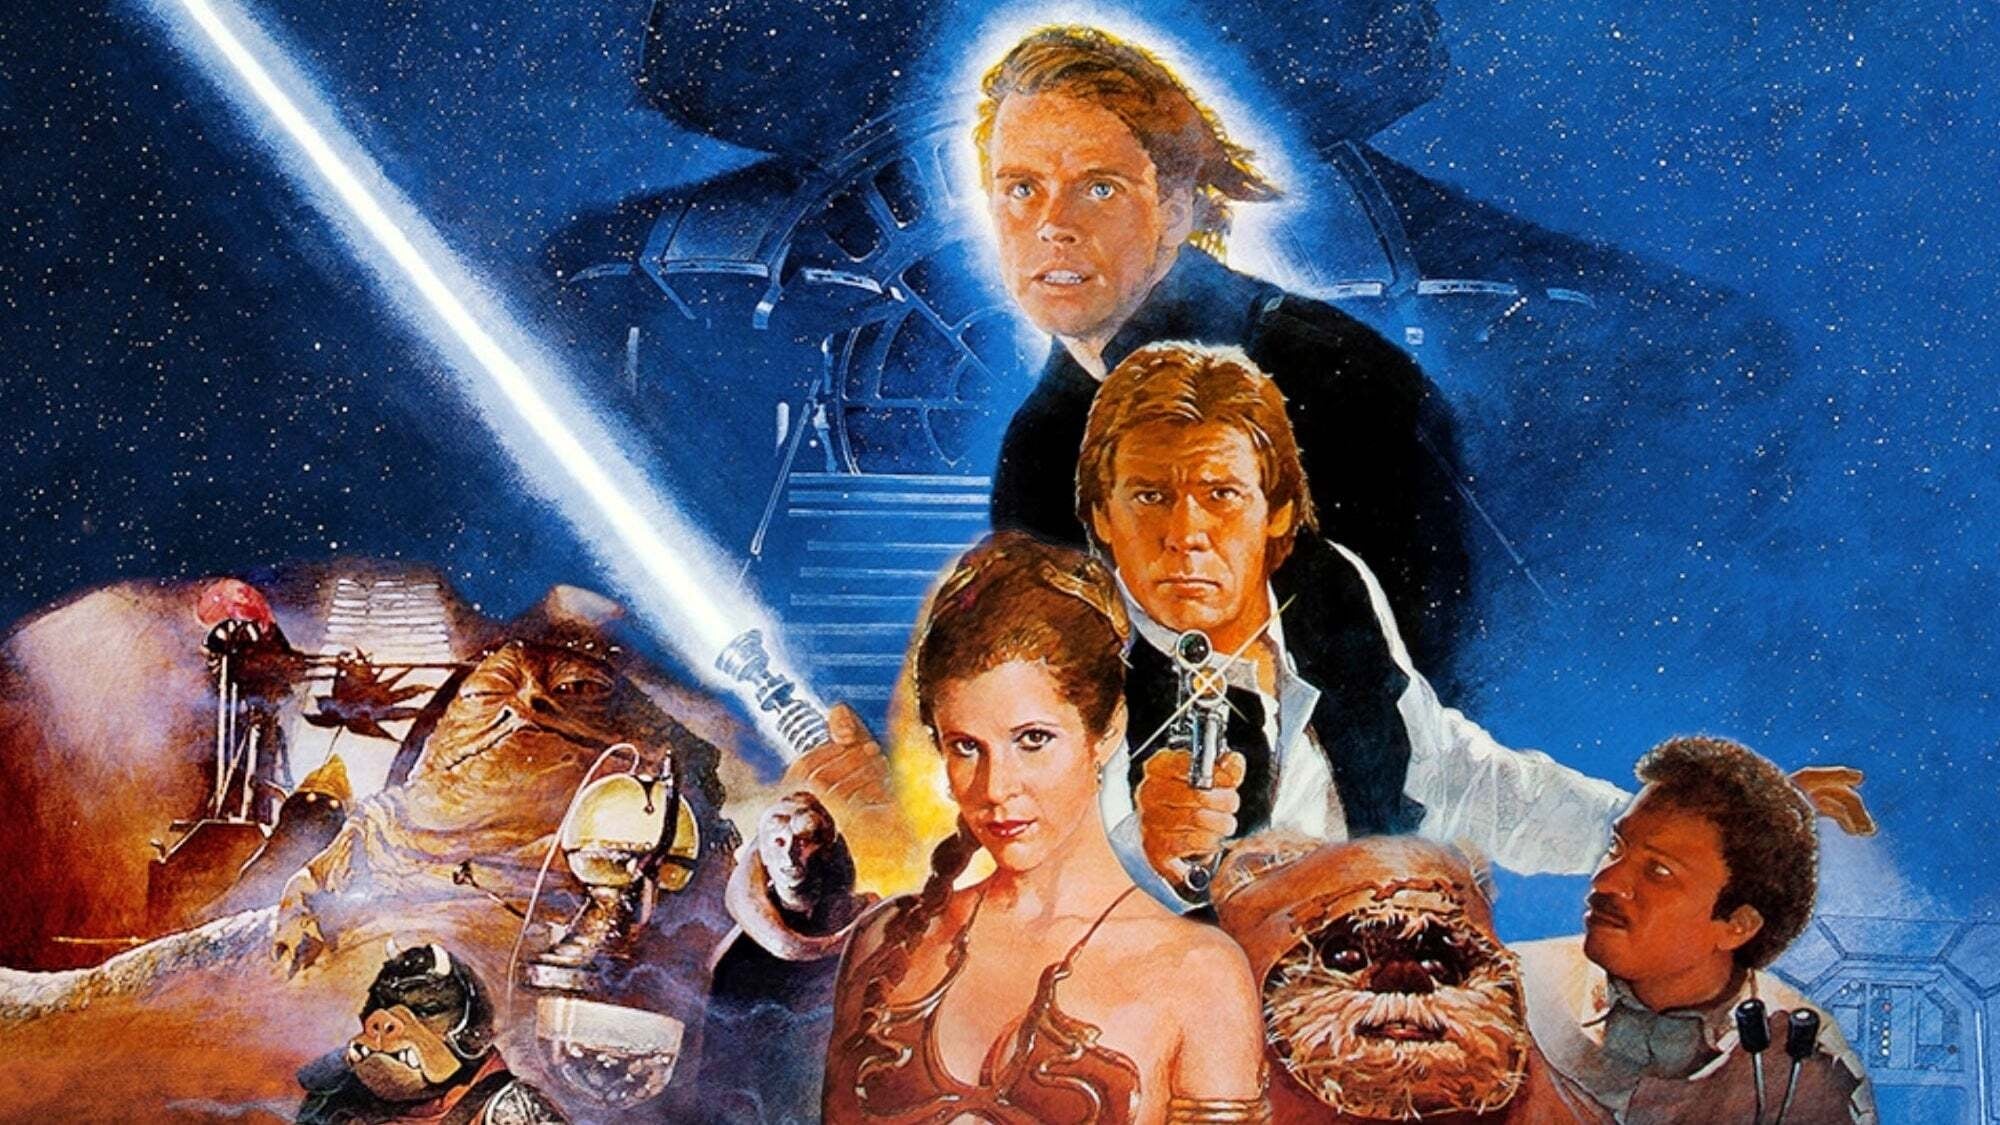 Image du film Star Wars Episode VI : le retour du Jedi 9gusdktqxj129xlptqpewcevgsbjpg